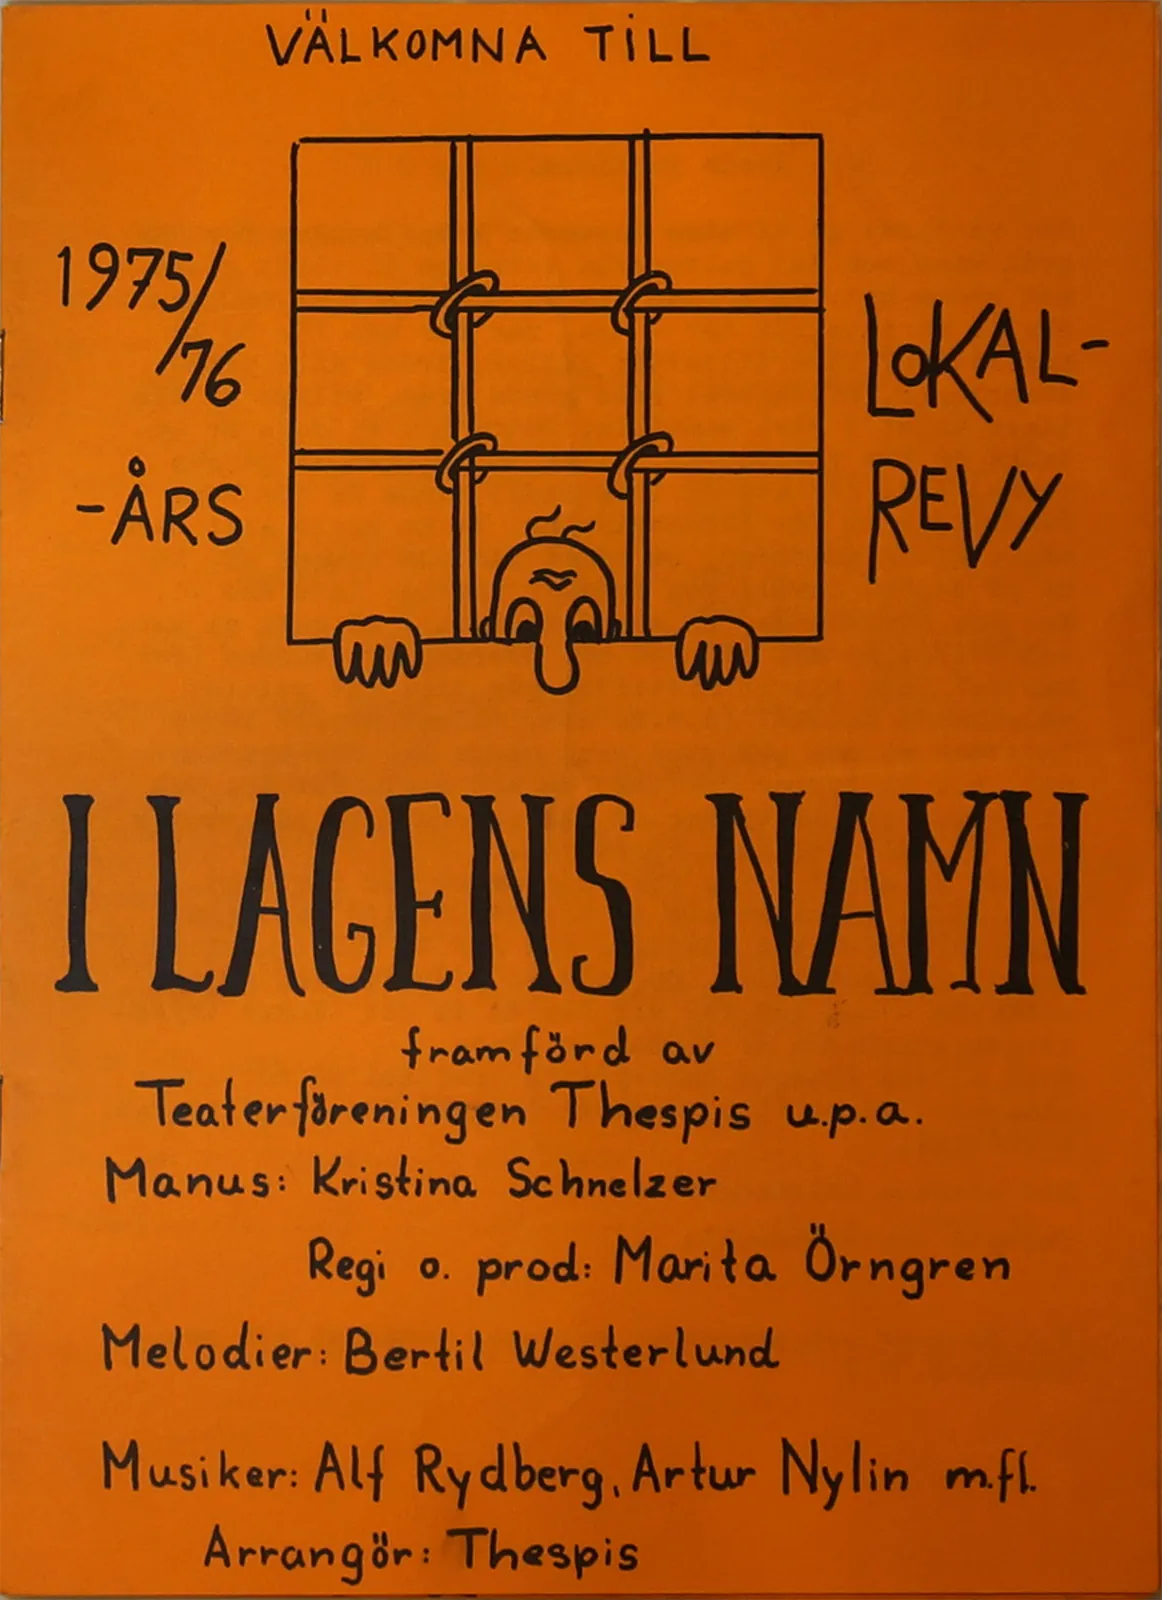 I lagens namn - Teaterföreningen Thespis nyårsrevy 1975-1976